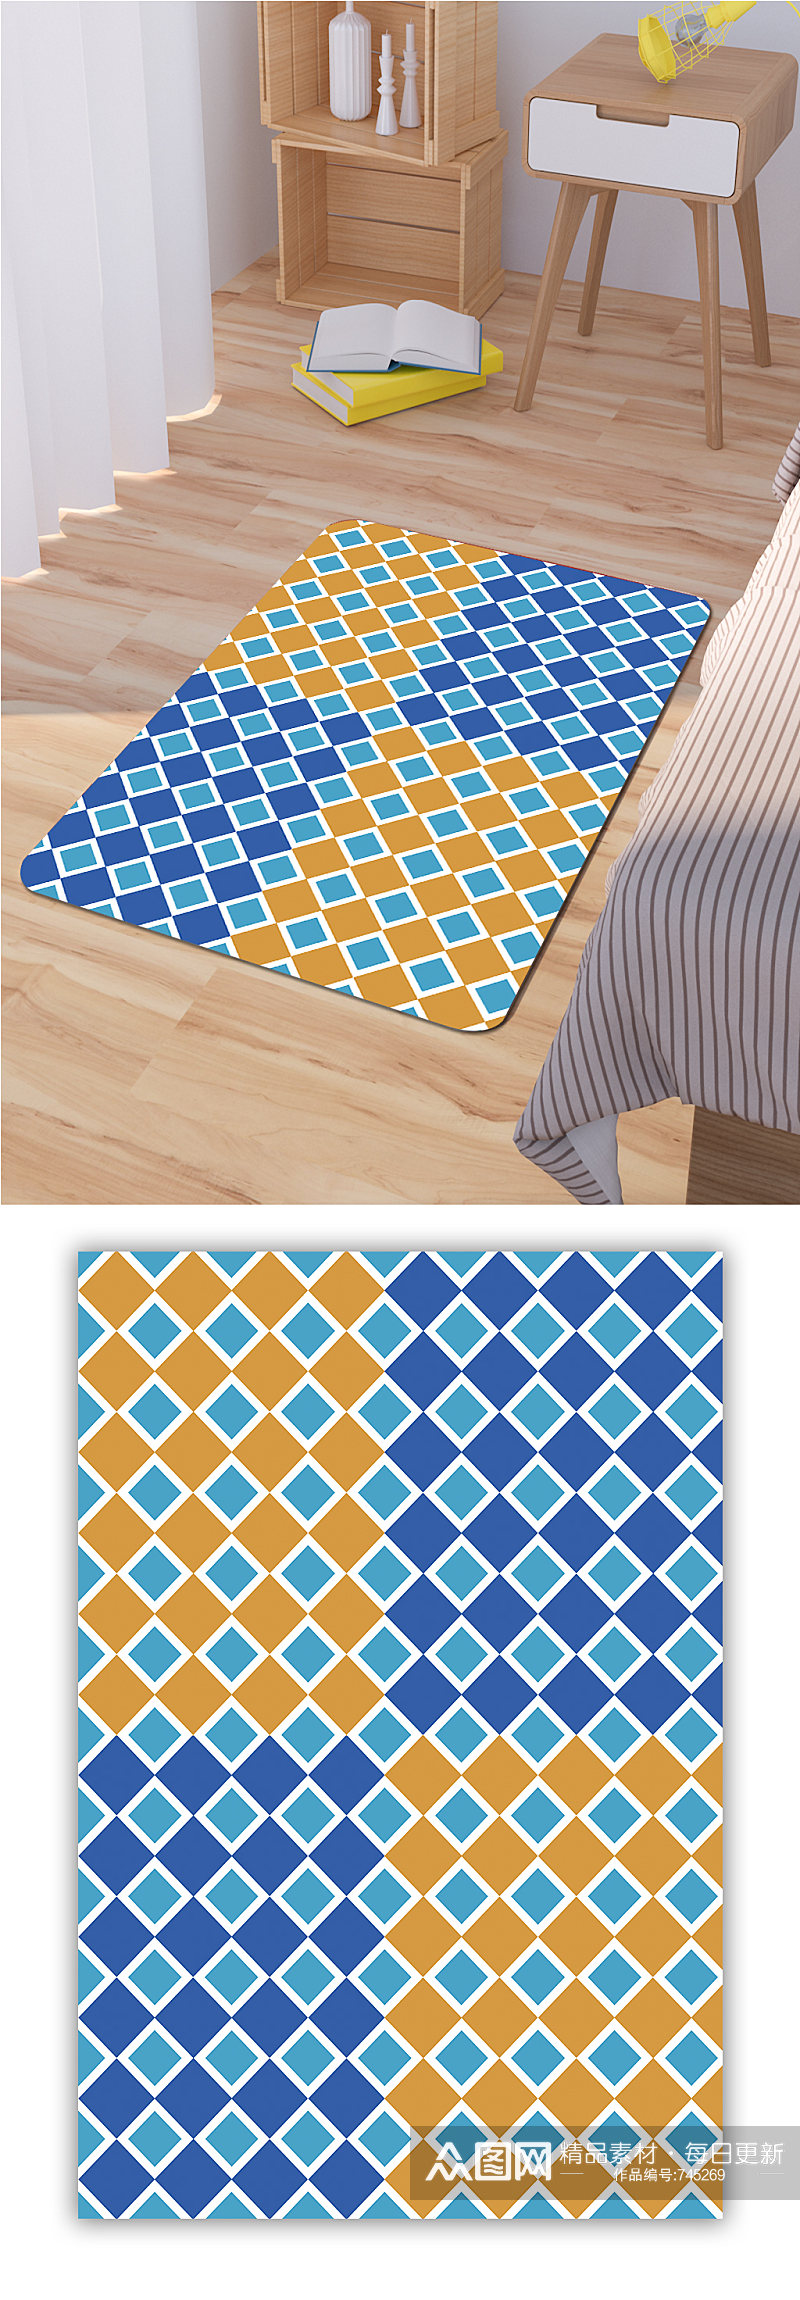 床边地毯地毯设计素材